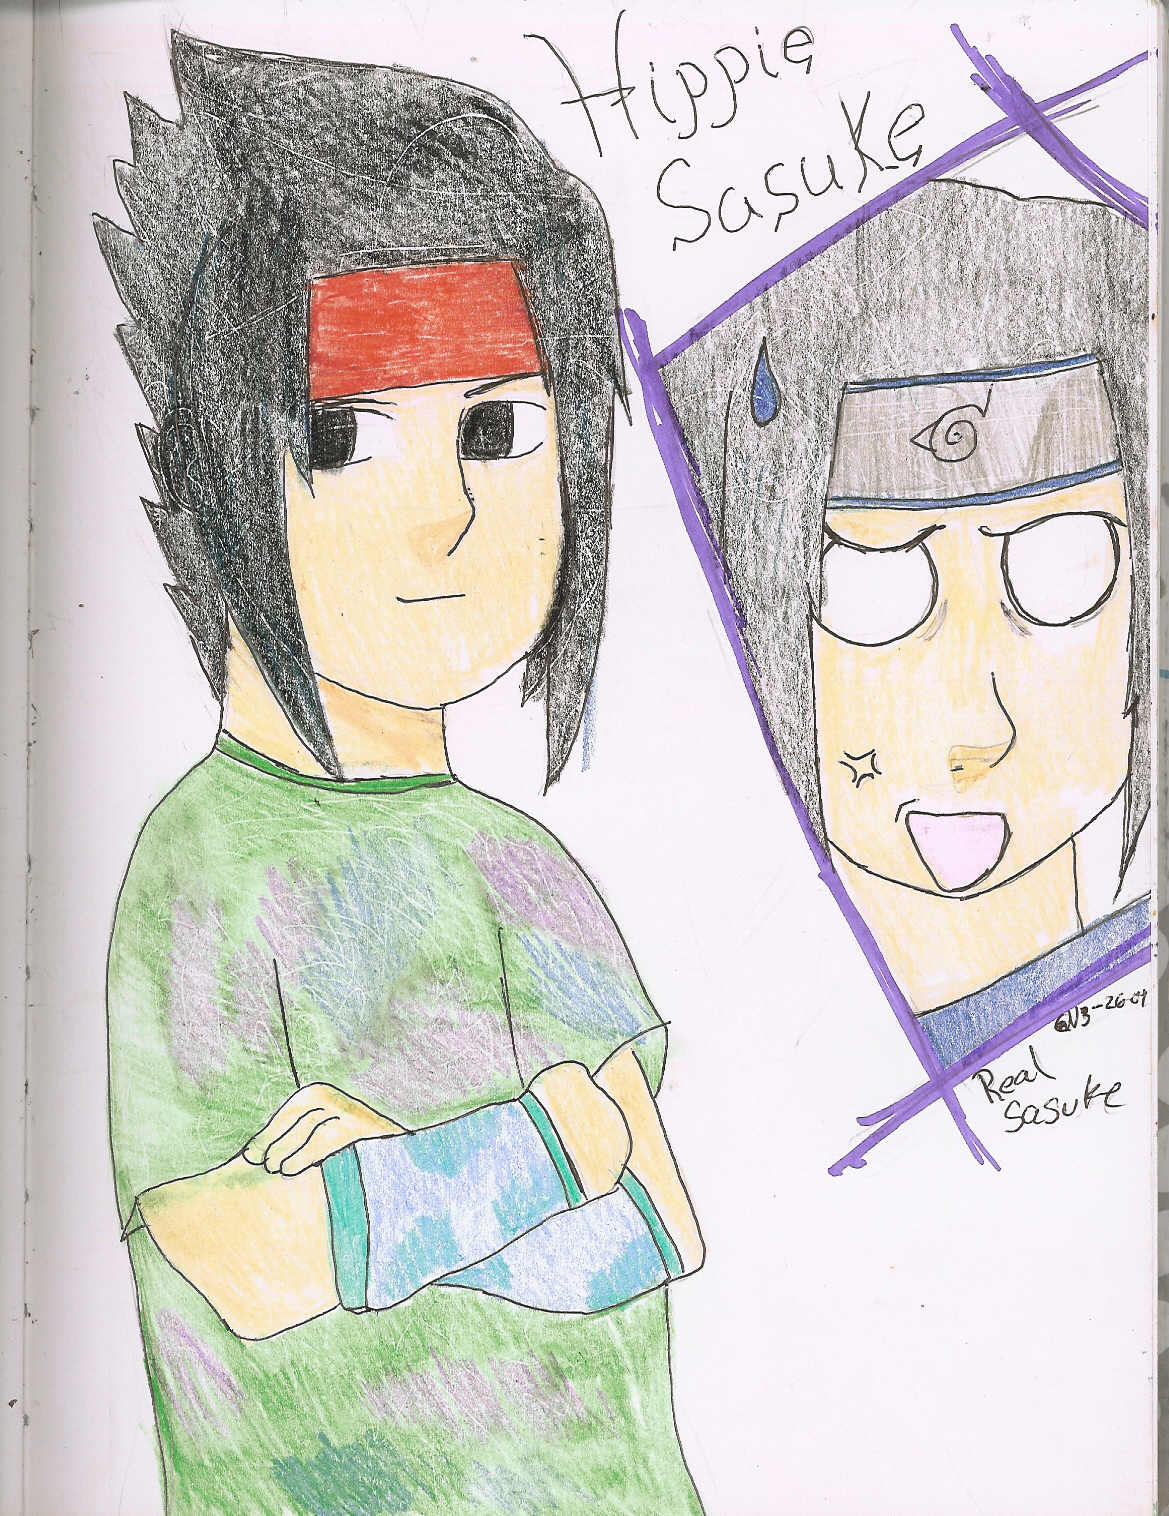 Sasuke Goes Hippie by Sasuke_Uchiha1121